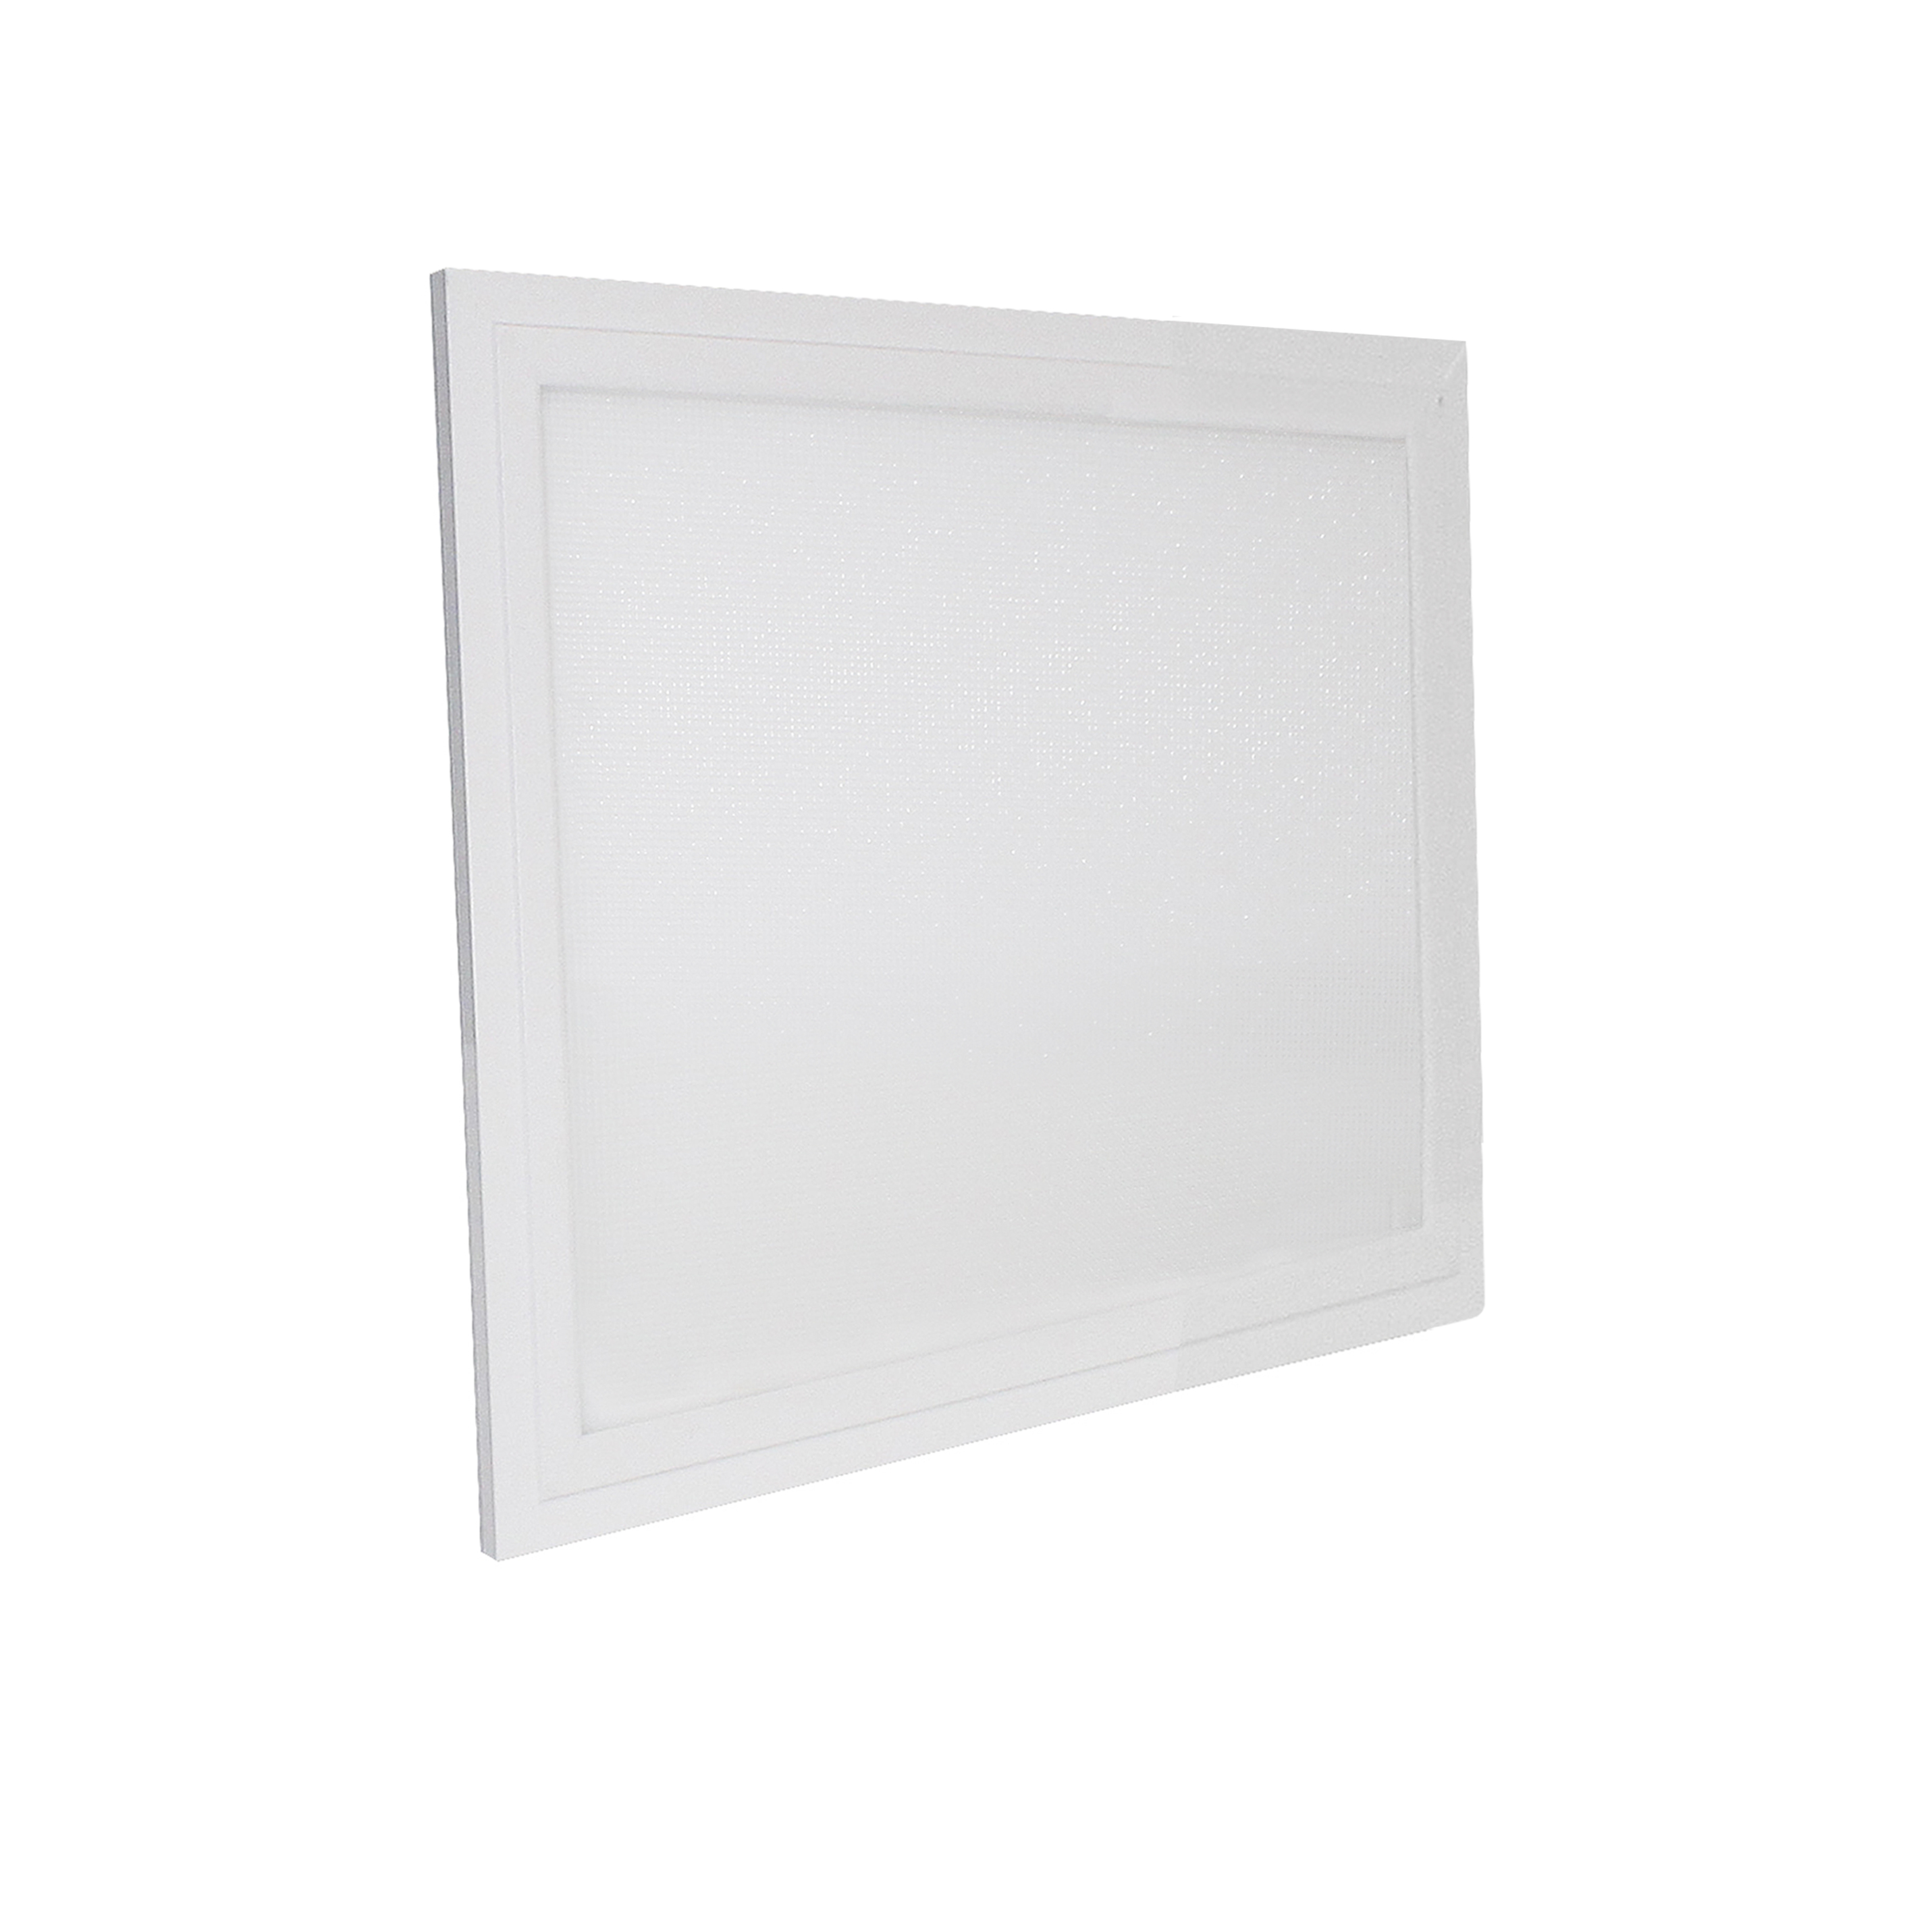 LED-Panel Multi Pro 4, 5-15 W, weiß 840, 300x300 mm, 120 lm/W, geeignet für Bildschirmarbeitsplätze